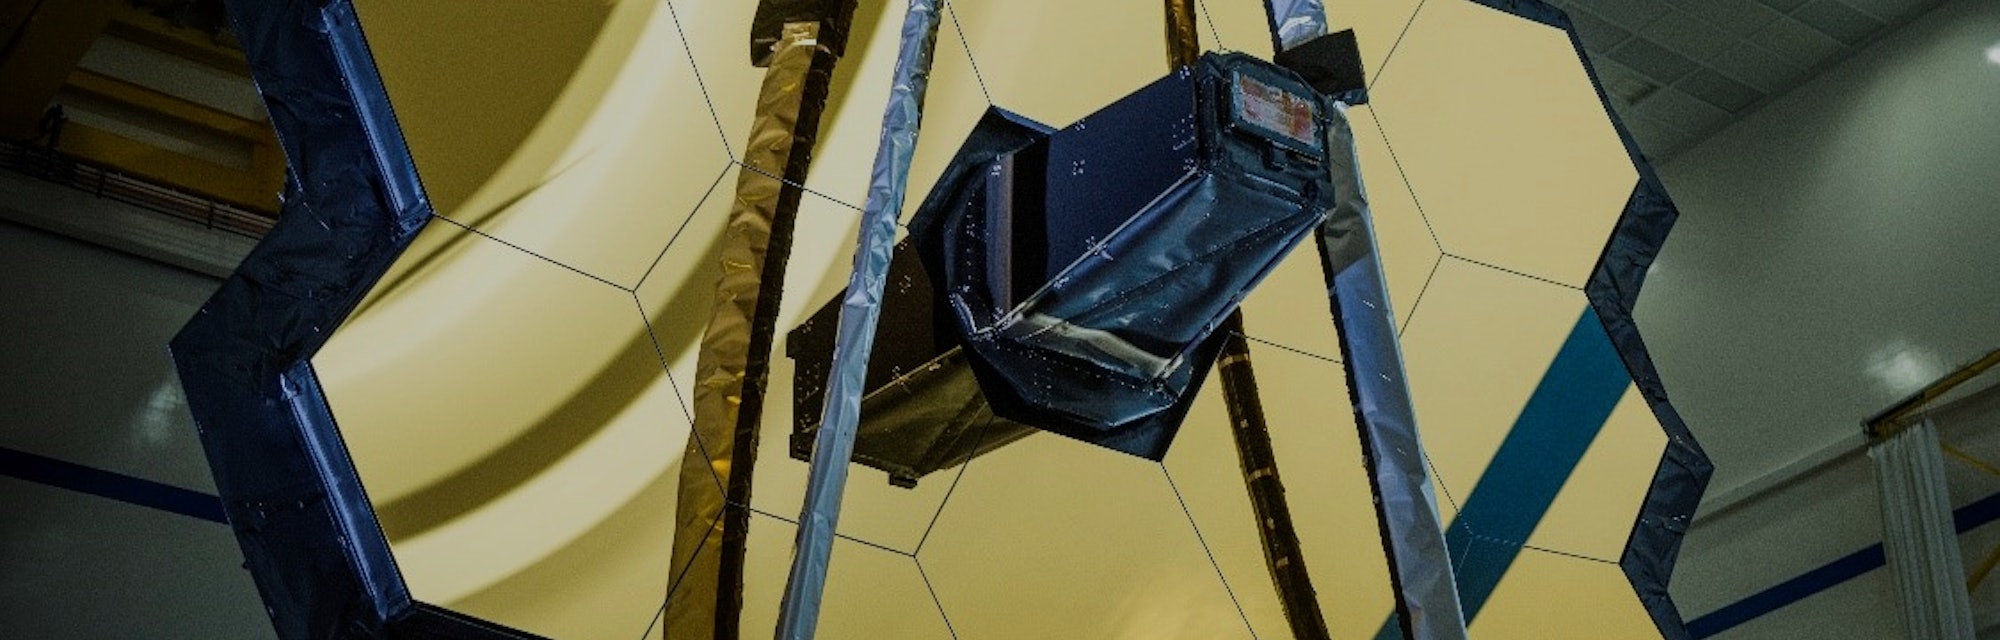 James Webb Space Telescope primary mirror